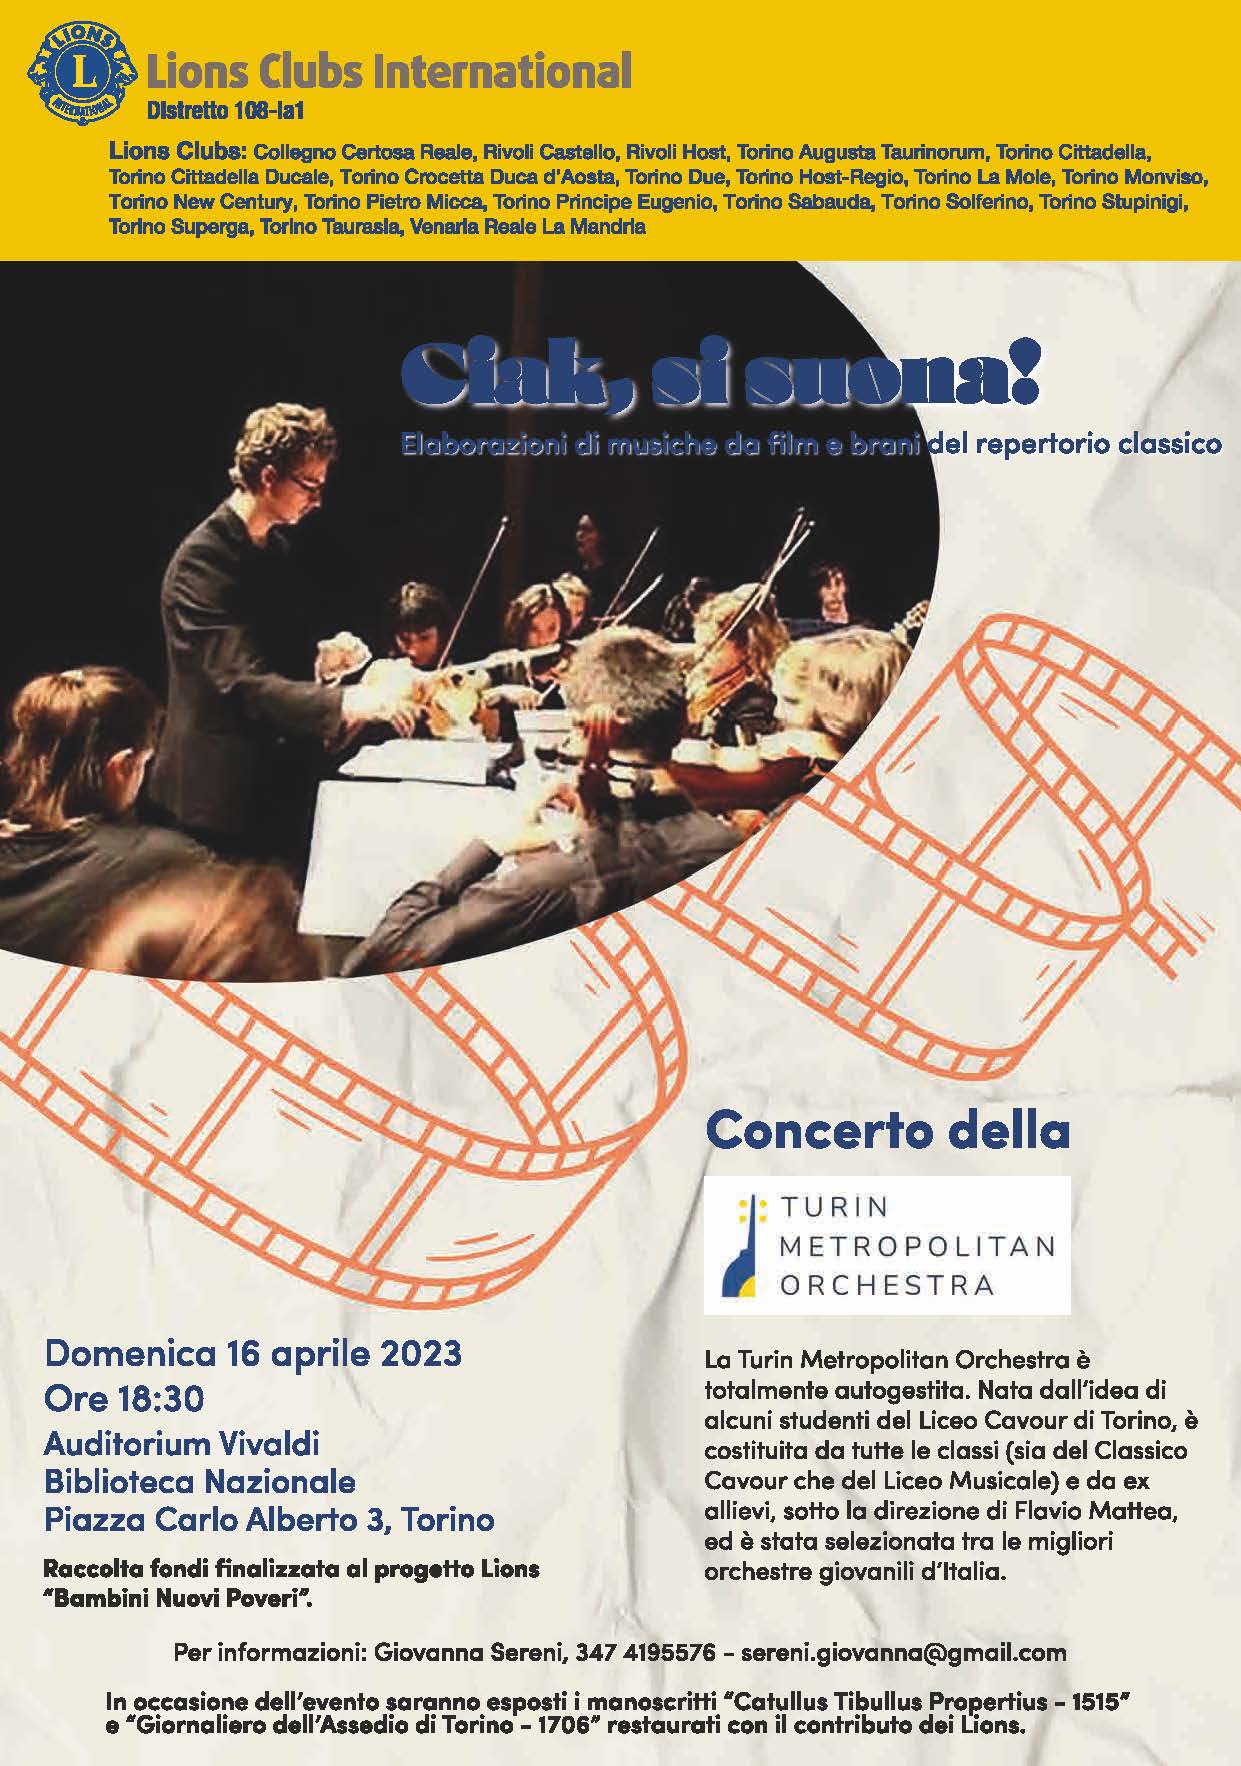 Domenica 16 aprile, all'Auditorium Vivaldi della Biblioteca Nazionale, concerto dell'ensemble giovanile Turin Metropolitan Orchestra a sostegno del progetto Lions 